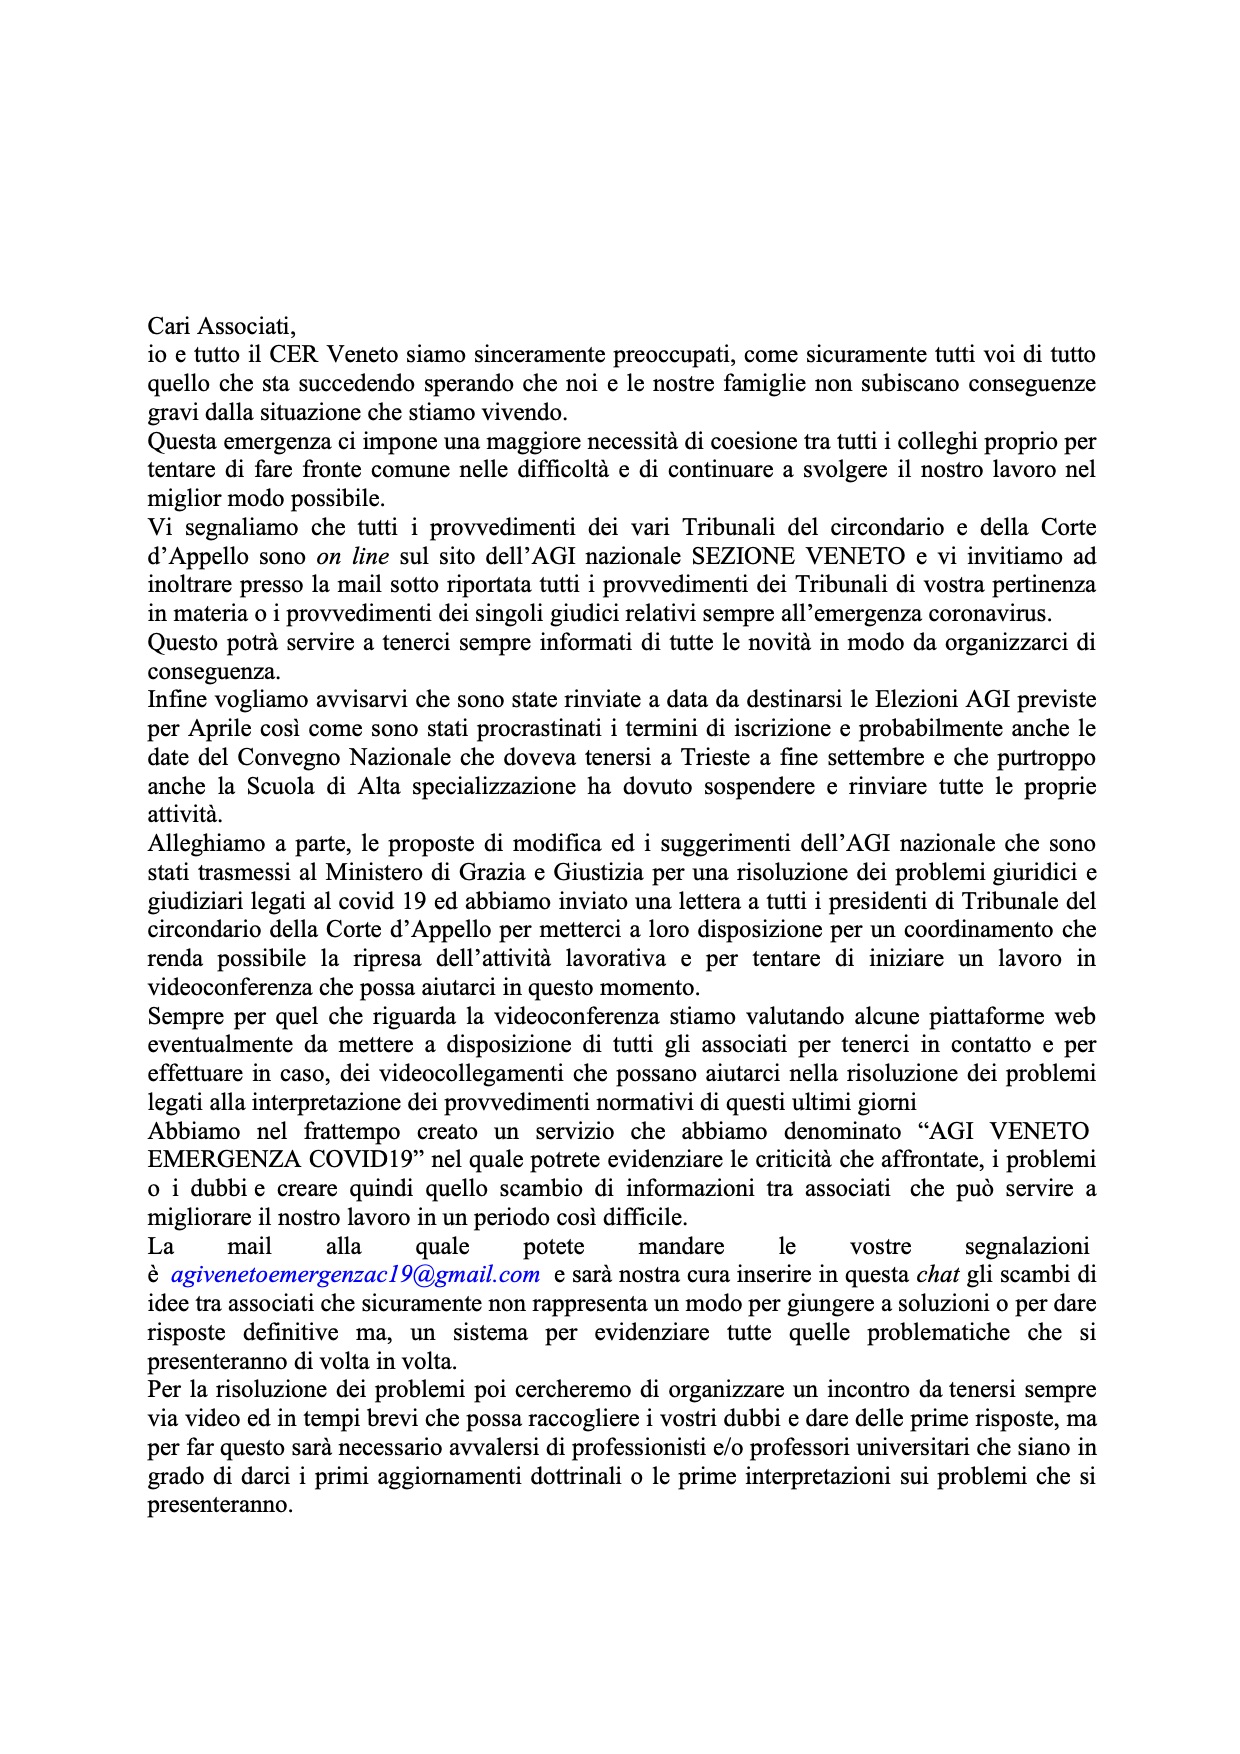 Lettera Presidente Agi Veneto 19.03.2020 - Attivazione cassella di posta elettronica  agivenetoemergenzac19@gmail.com 